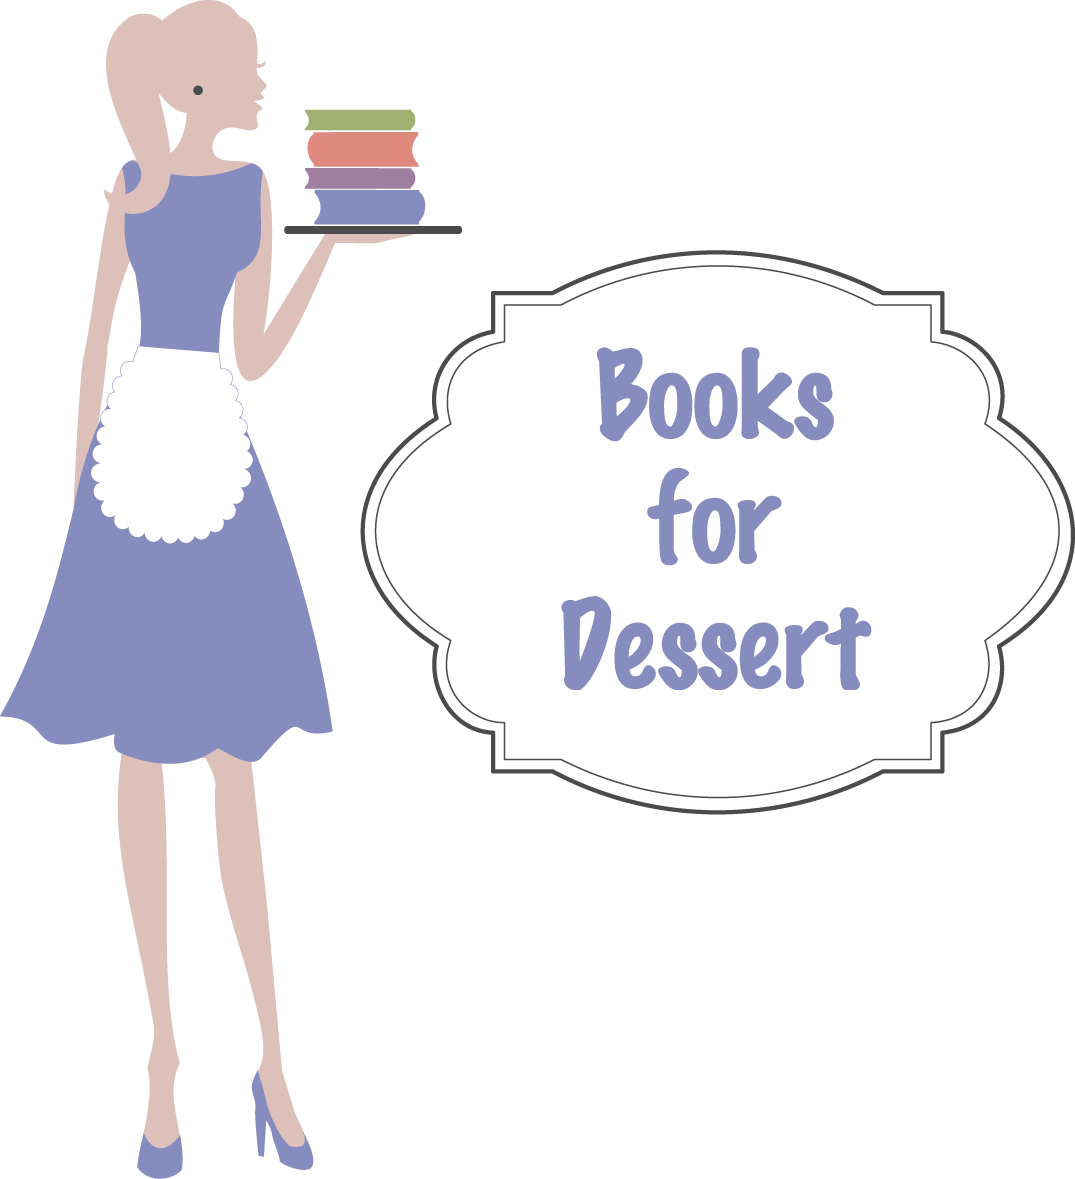 Books for Dessert